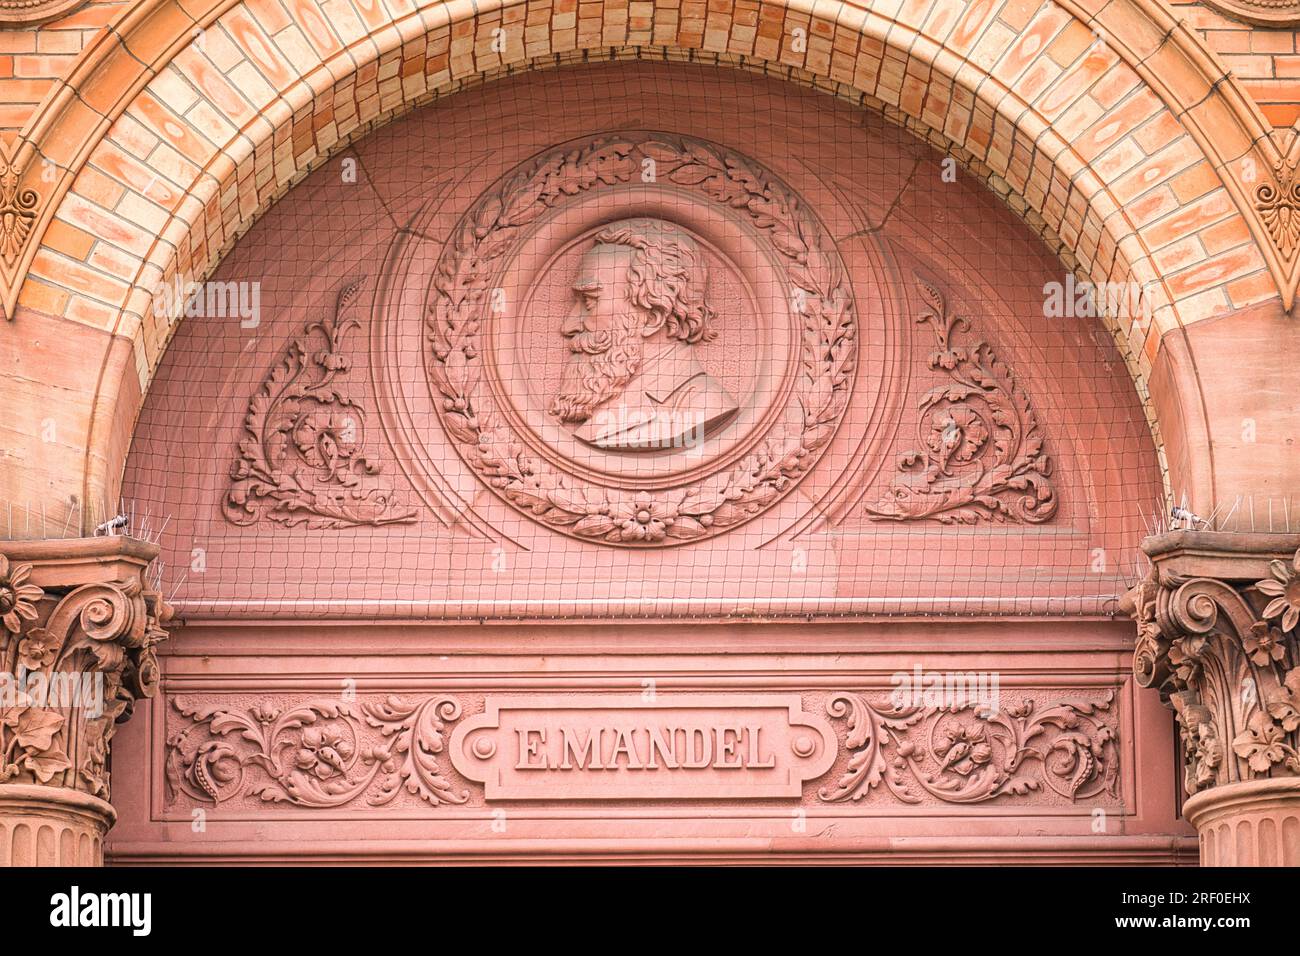 Sculpture d'Eduard Mandel un graveur allemand du 19e siècle sur la façade en briques rouges du musée d'art Kunsthalle de Hambourg, Hambourg, Allemagne Banque D'Images